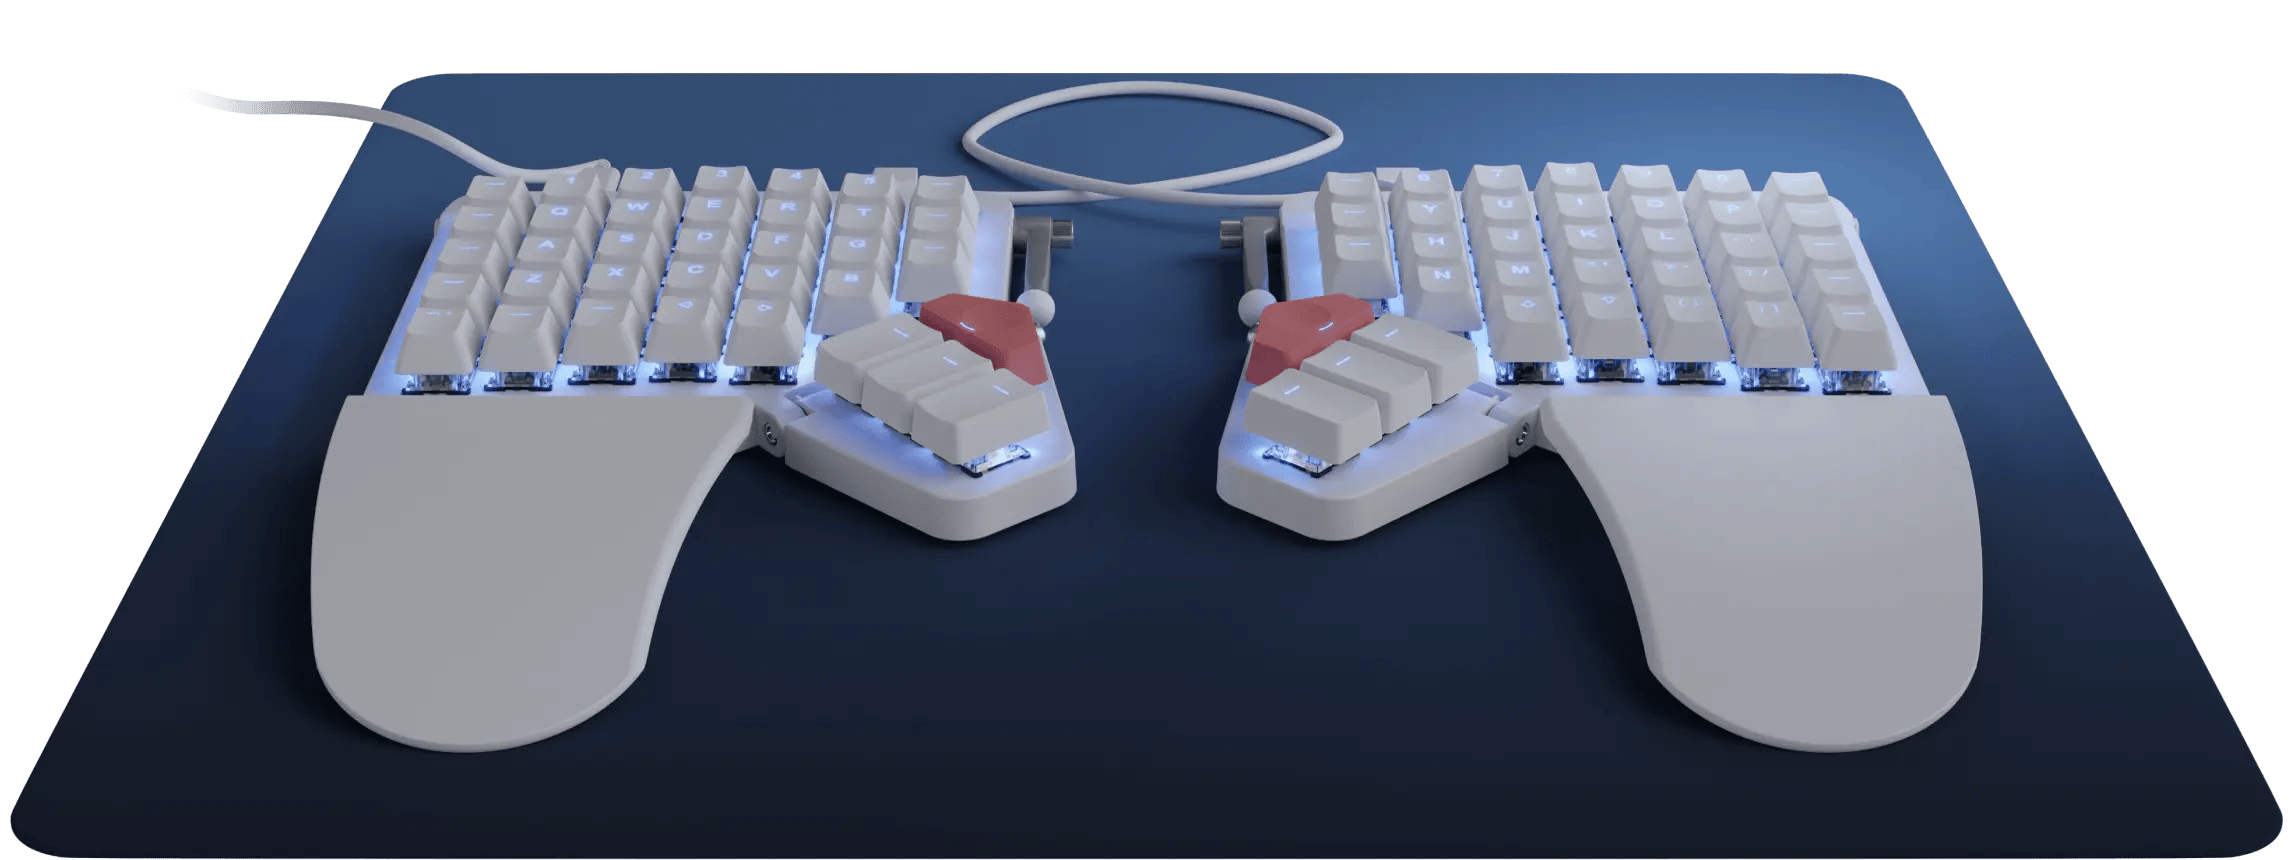 Moonlander Mark I Keyboard White Color